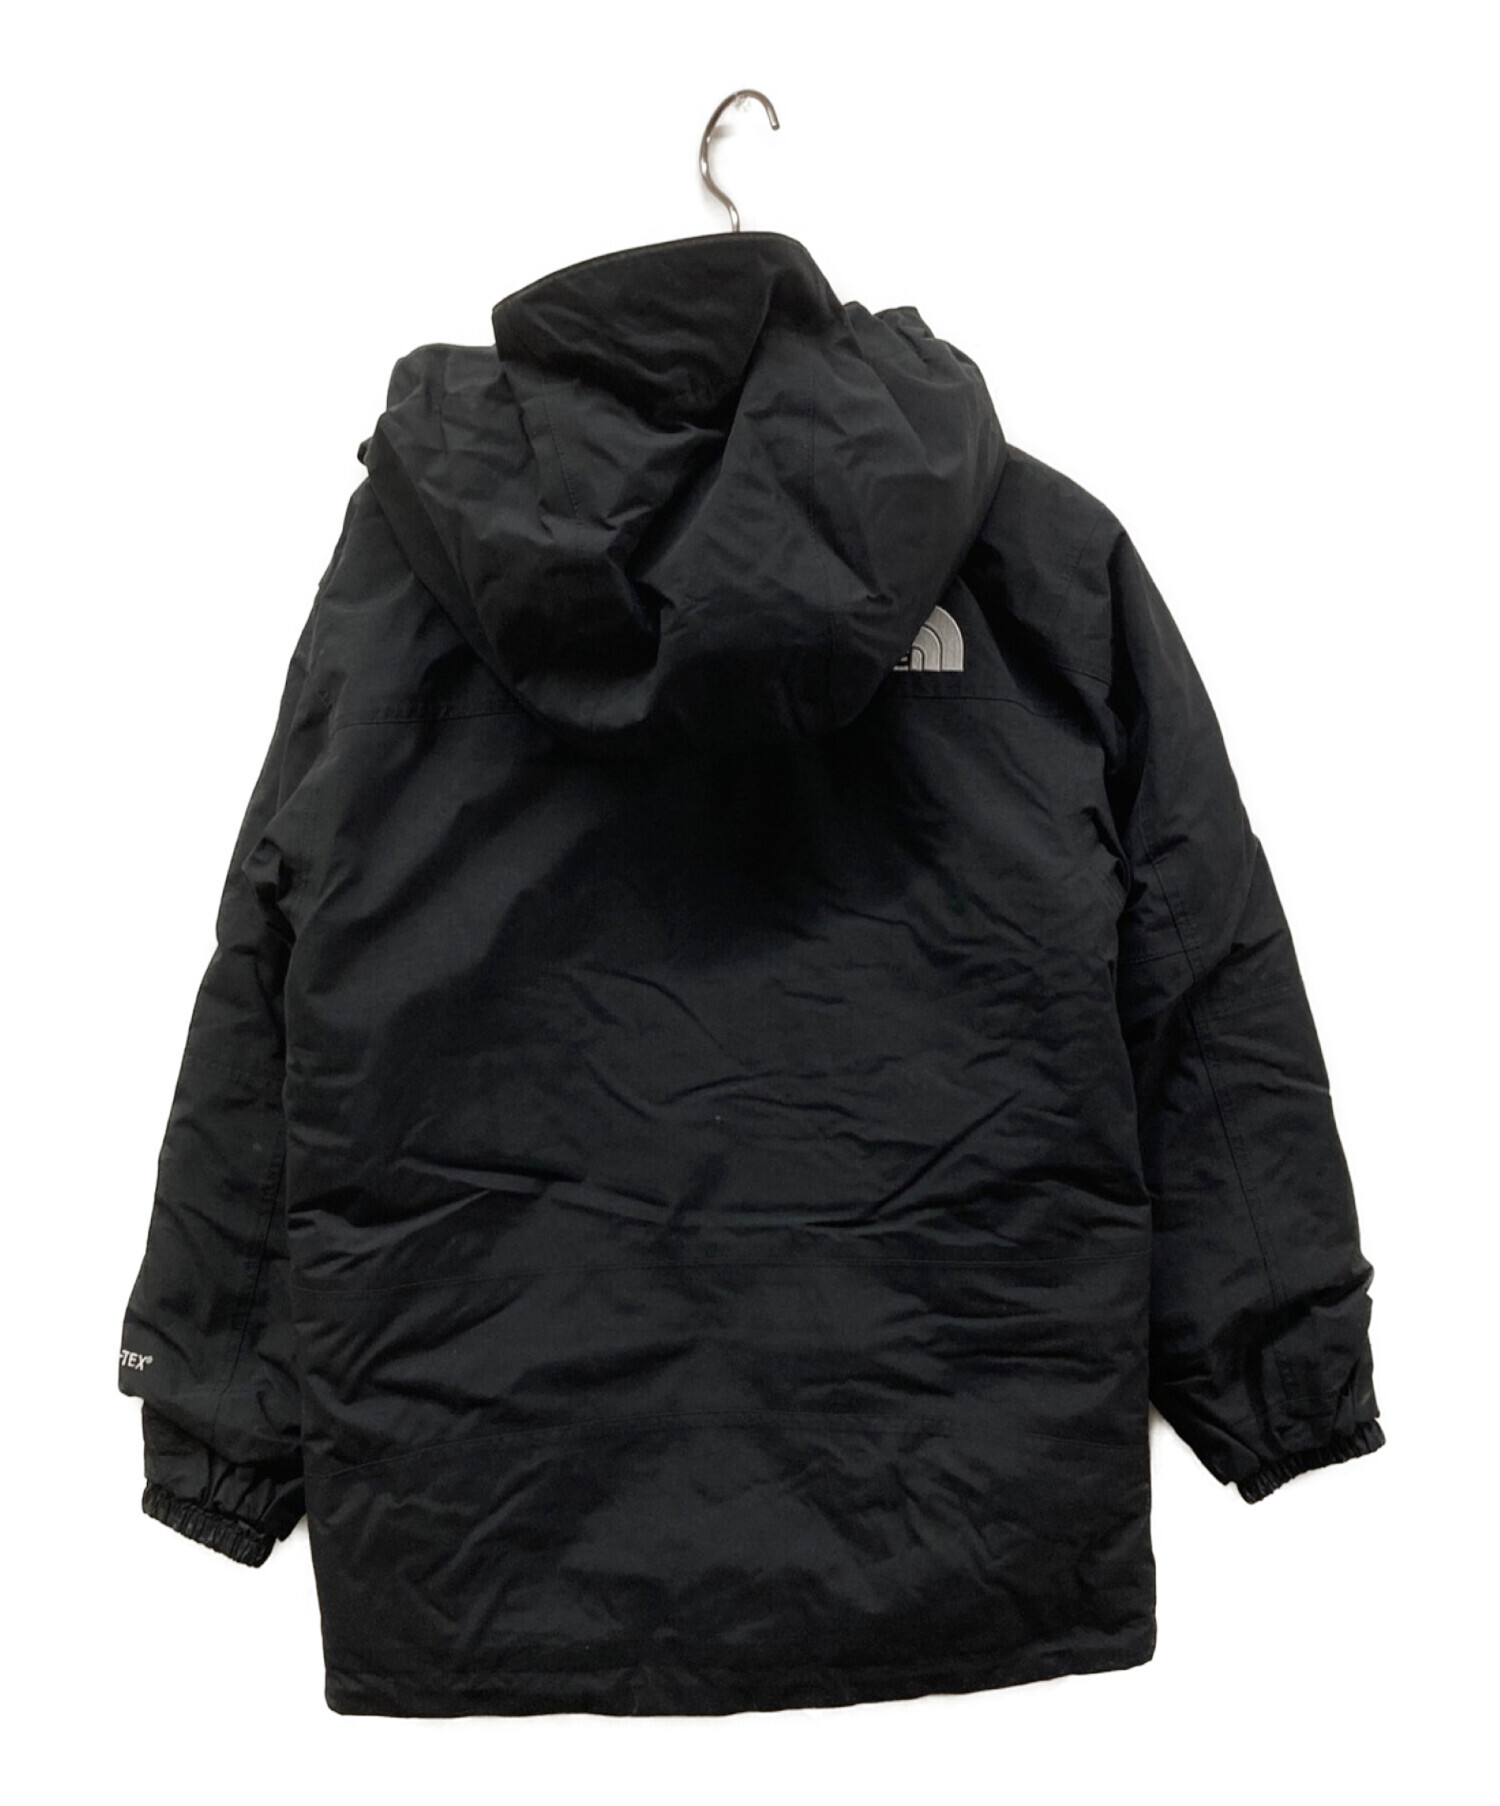 THE NORTH FACE (ザ ノース フェイス) Mountain Insulation  Jacket(マウンテンインサレーションジャケット)NYJ81800 ブラック サイズ:150